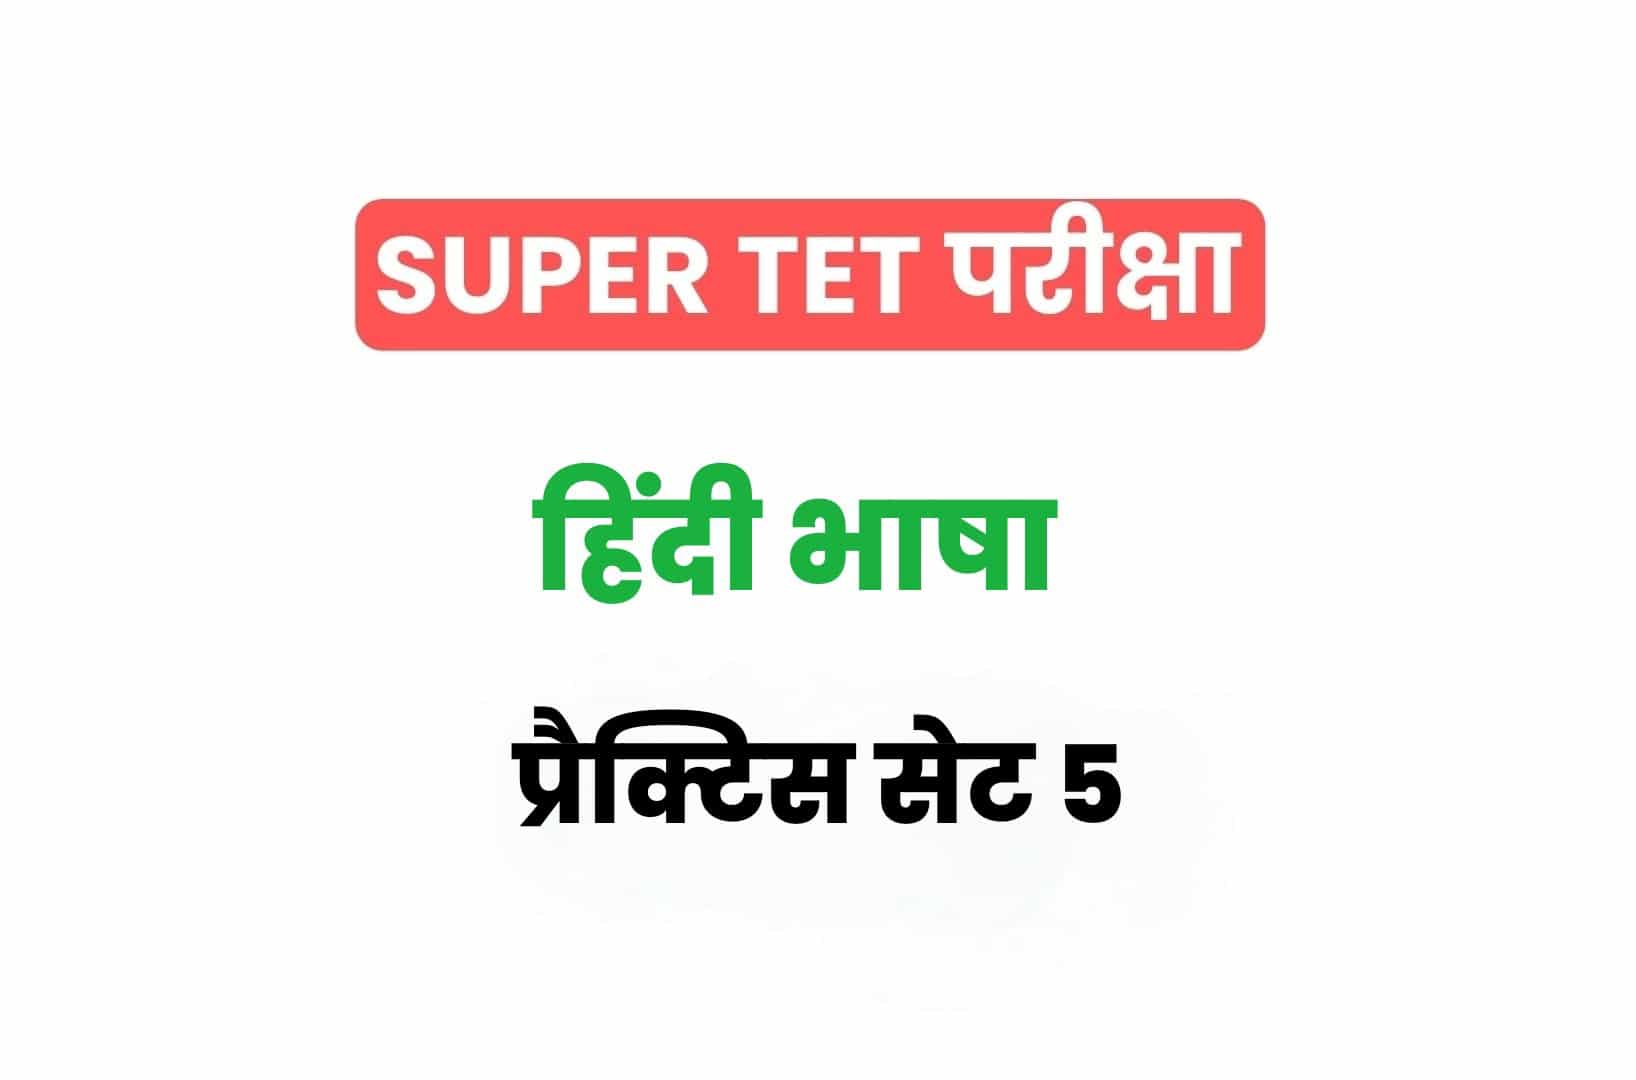 SUPER TET 2022 हिंदी प्रैक्टिस सेट 6: हिंदी के 15 ऐसे महत्वपूर्ण प्रश्नों का संग्रह जो आगामी सुपर टेट परीक्षा में पूछे जा सकते हैं, अवश्य देखें